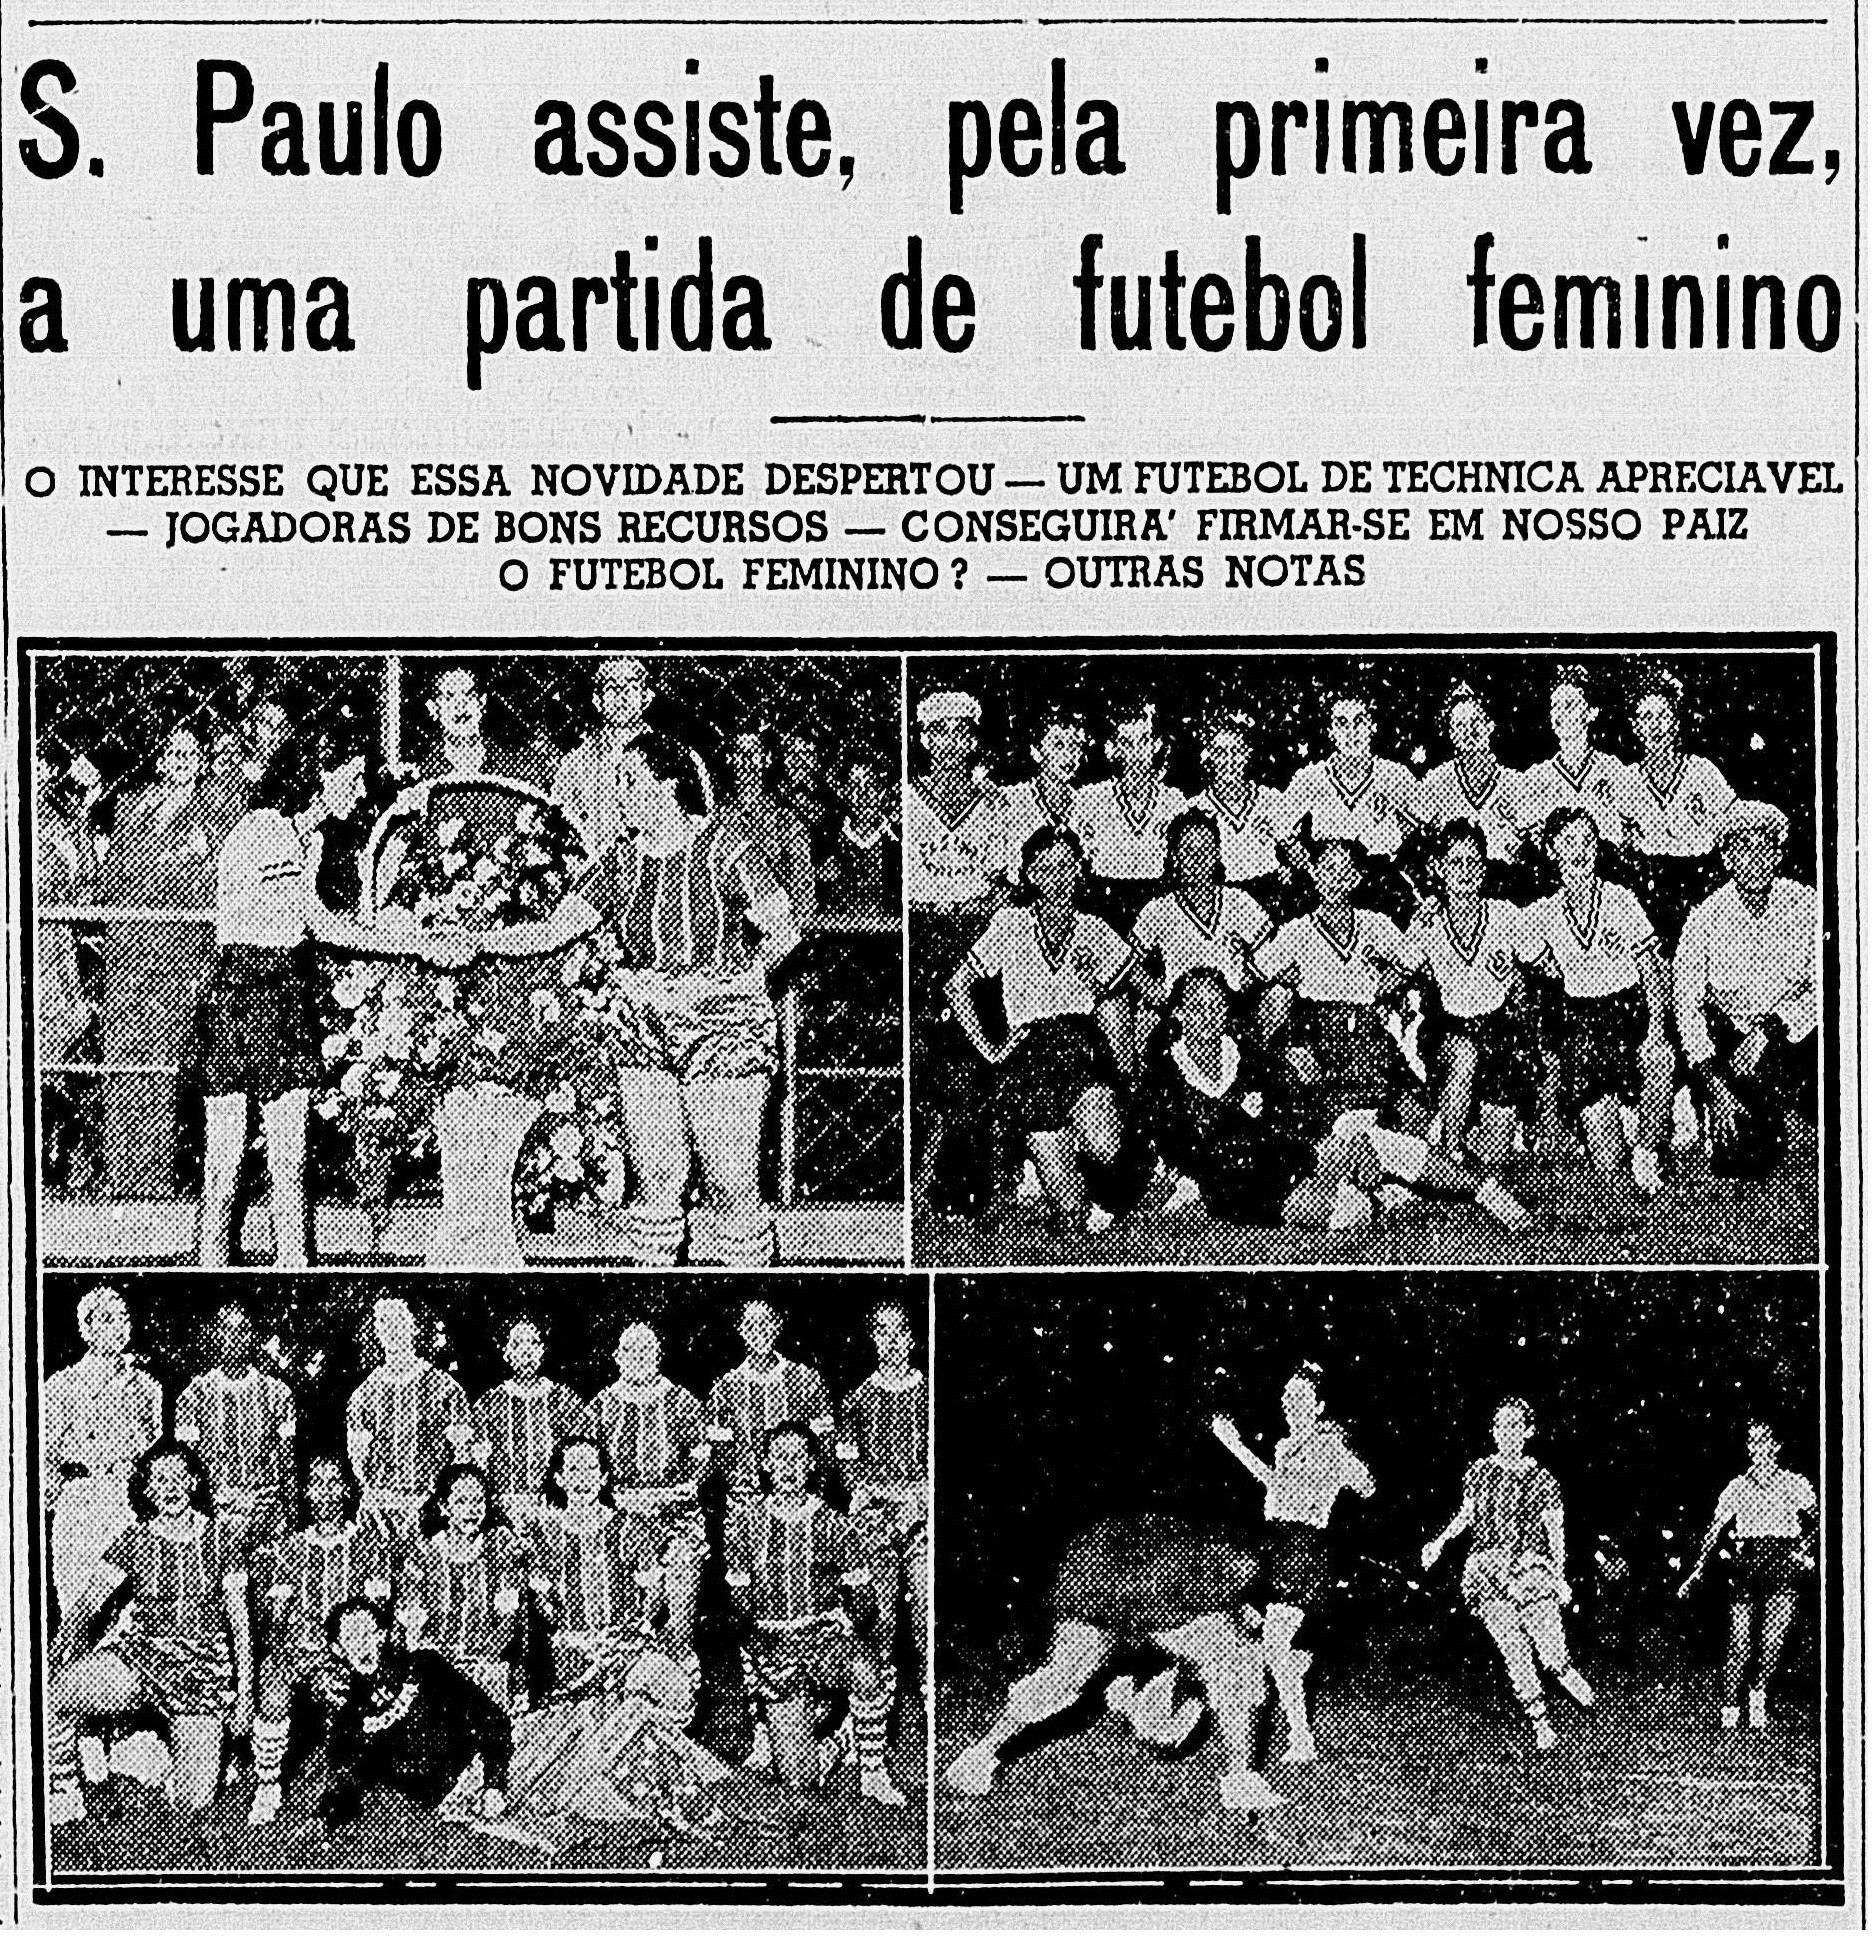 Sport Club Brasileiro e Casino Realengo Futebol Clube, dois times de futebol feminino, disputaram a primeira partida de futebol feminino no país em 1940 (Foto: Jornal Correio Paulistano/Acervo Fundação Biblioteca Nacional)